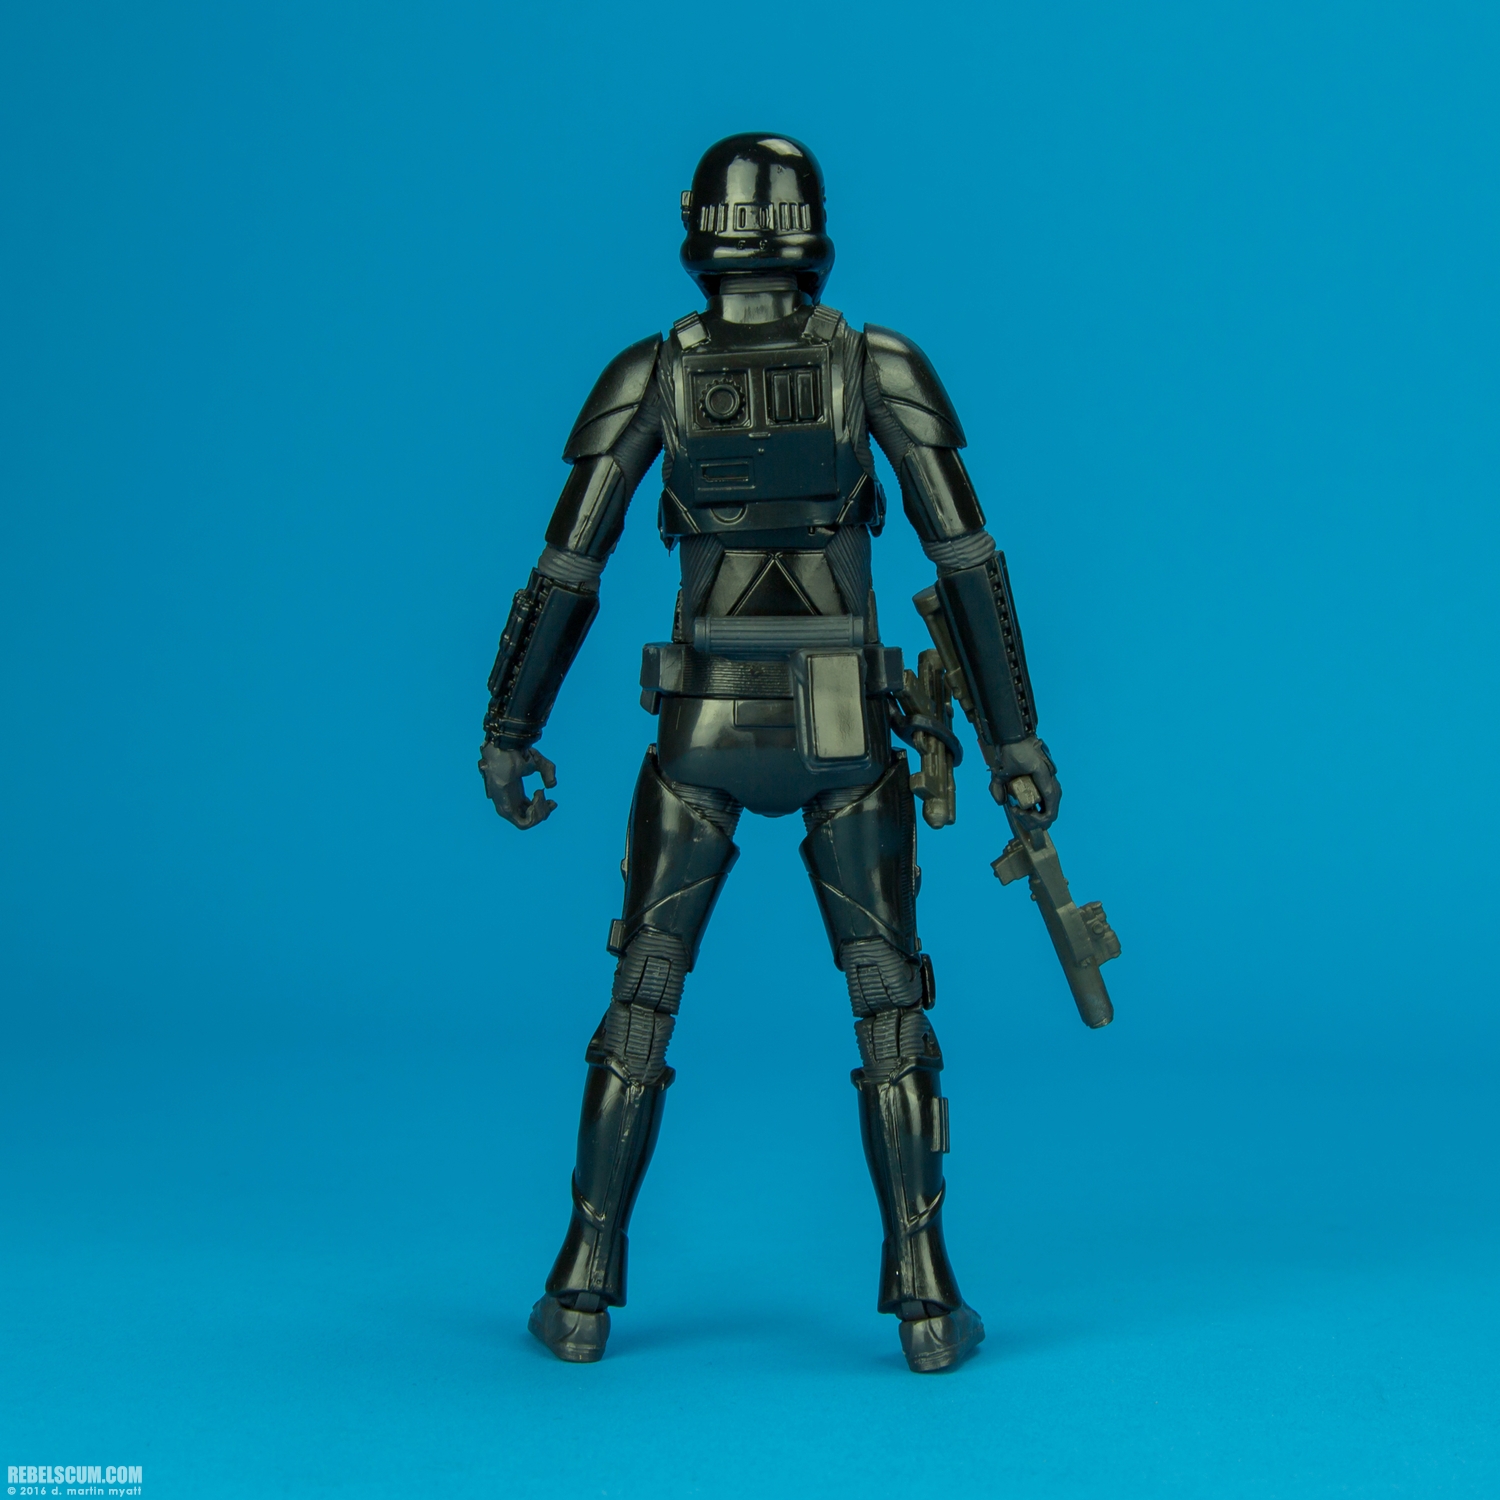 Imperial-Death-Trooper-25-The-Black-Series-6-inch-008.jpg